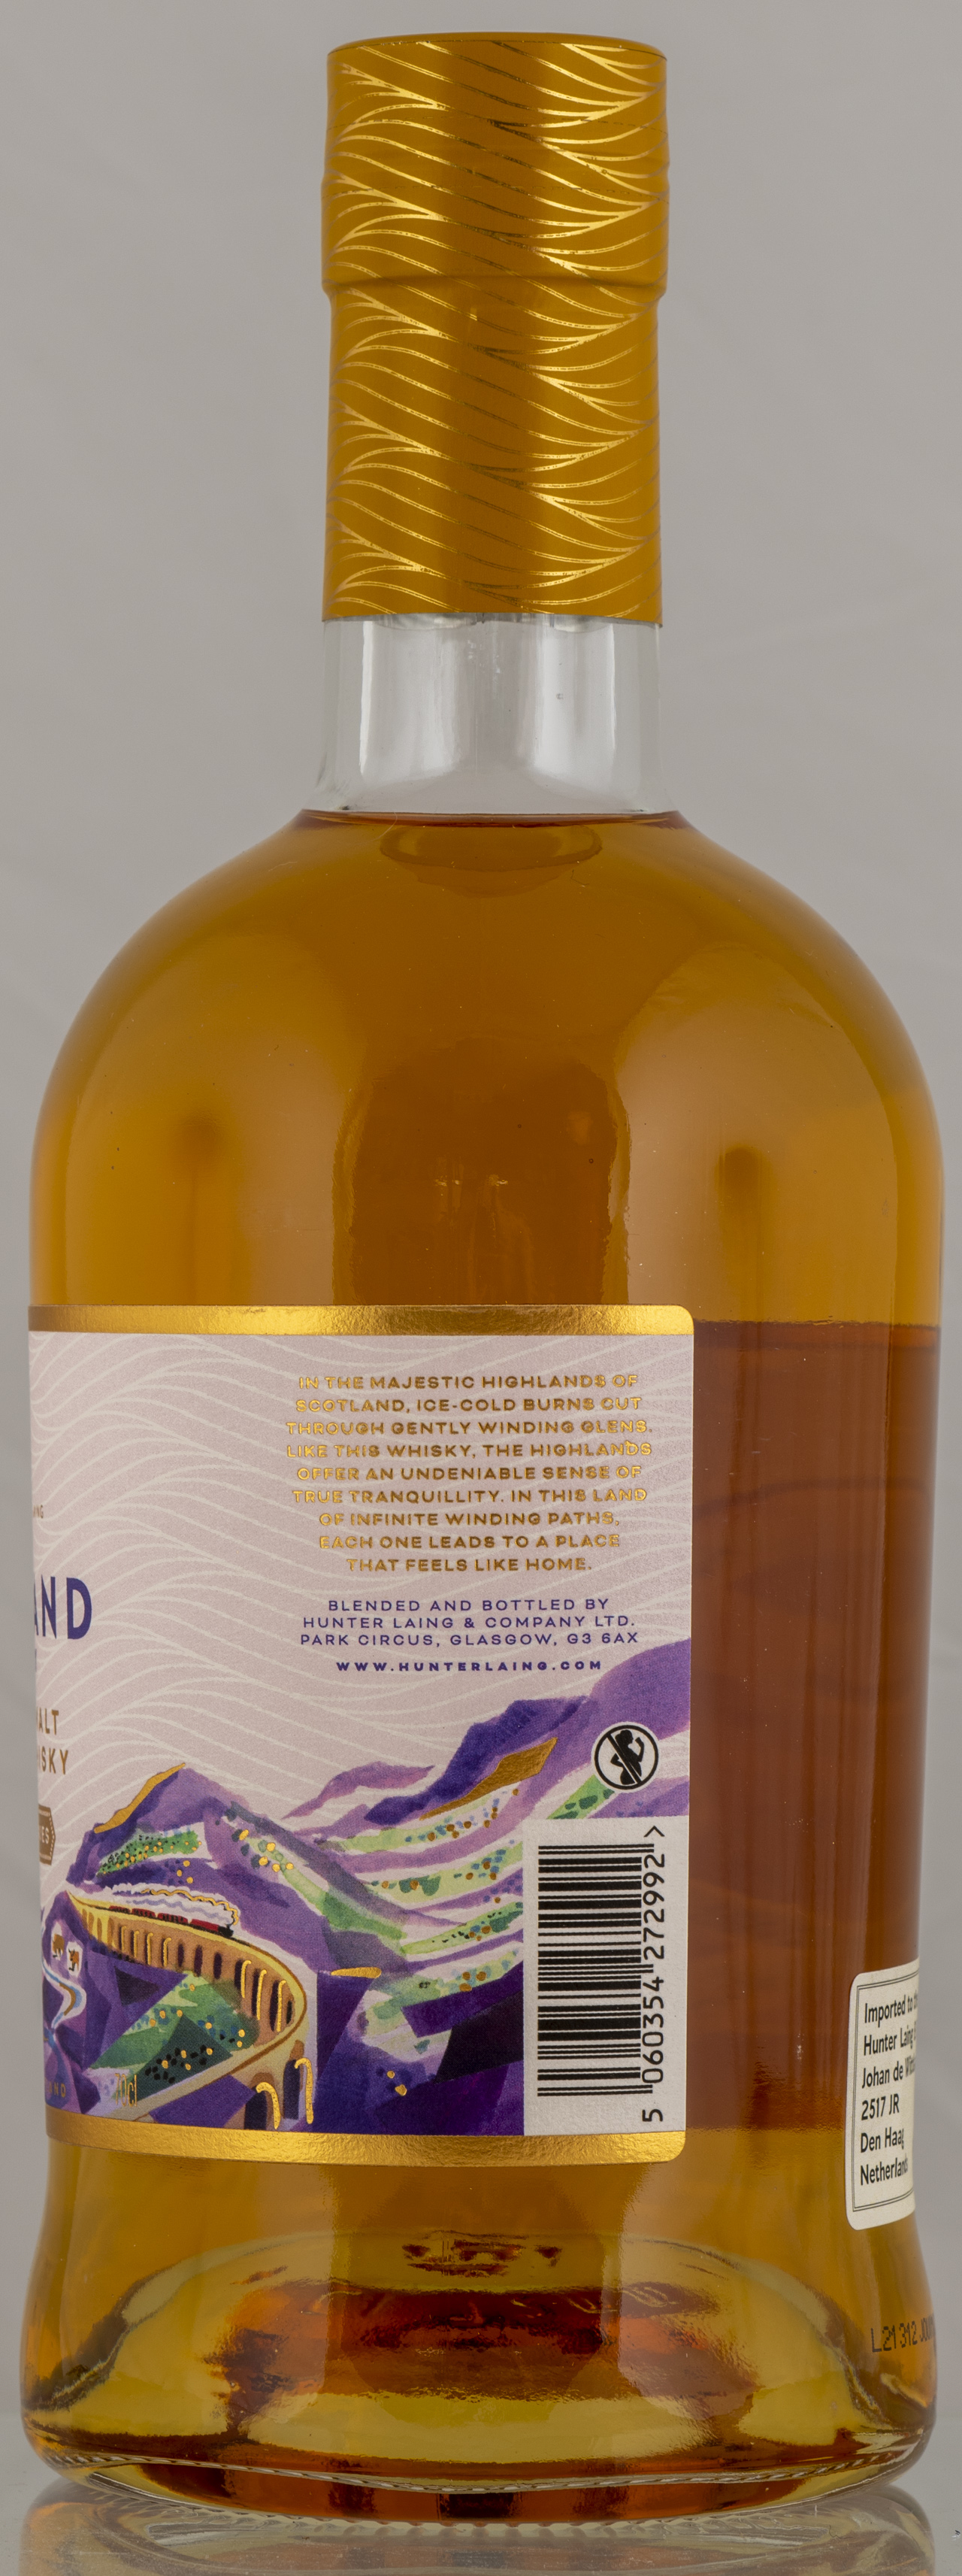 Billede: PHC_7331 - Hunter Laing Highland Journey Blended Malt - bottle side.jpg